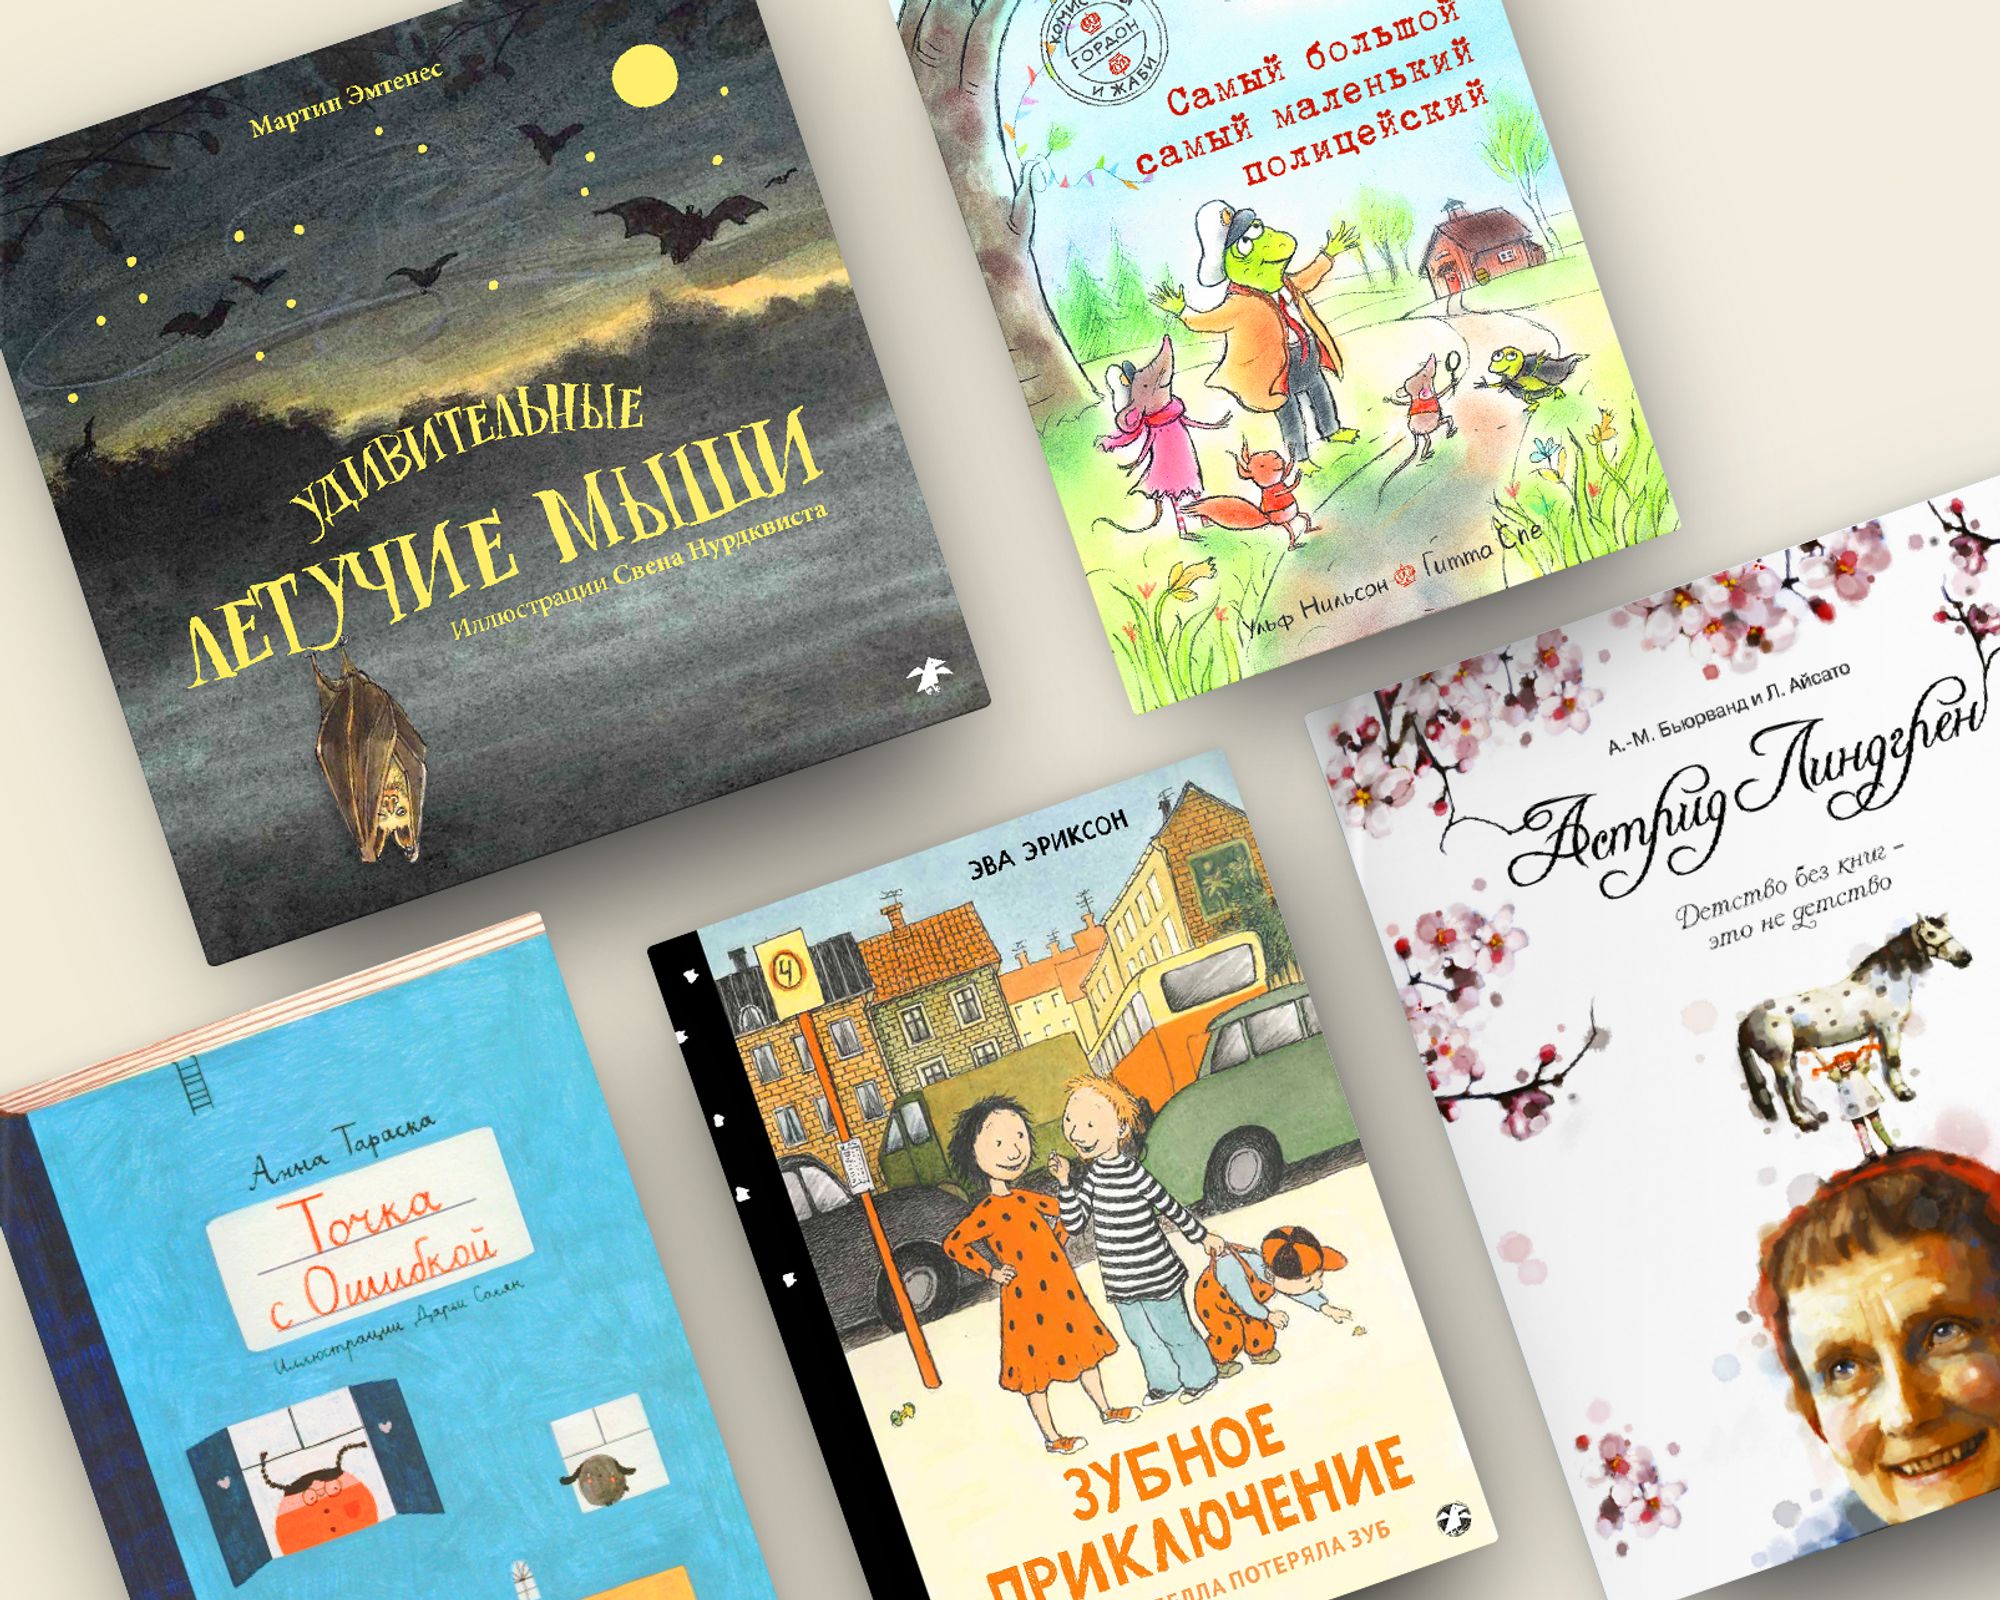 Точка, летучая мышь и Астрид Линдгрен — 5 новых книг в Букашках!